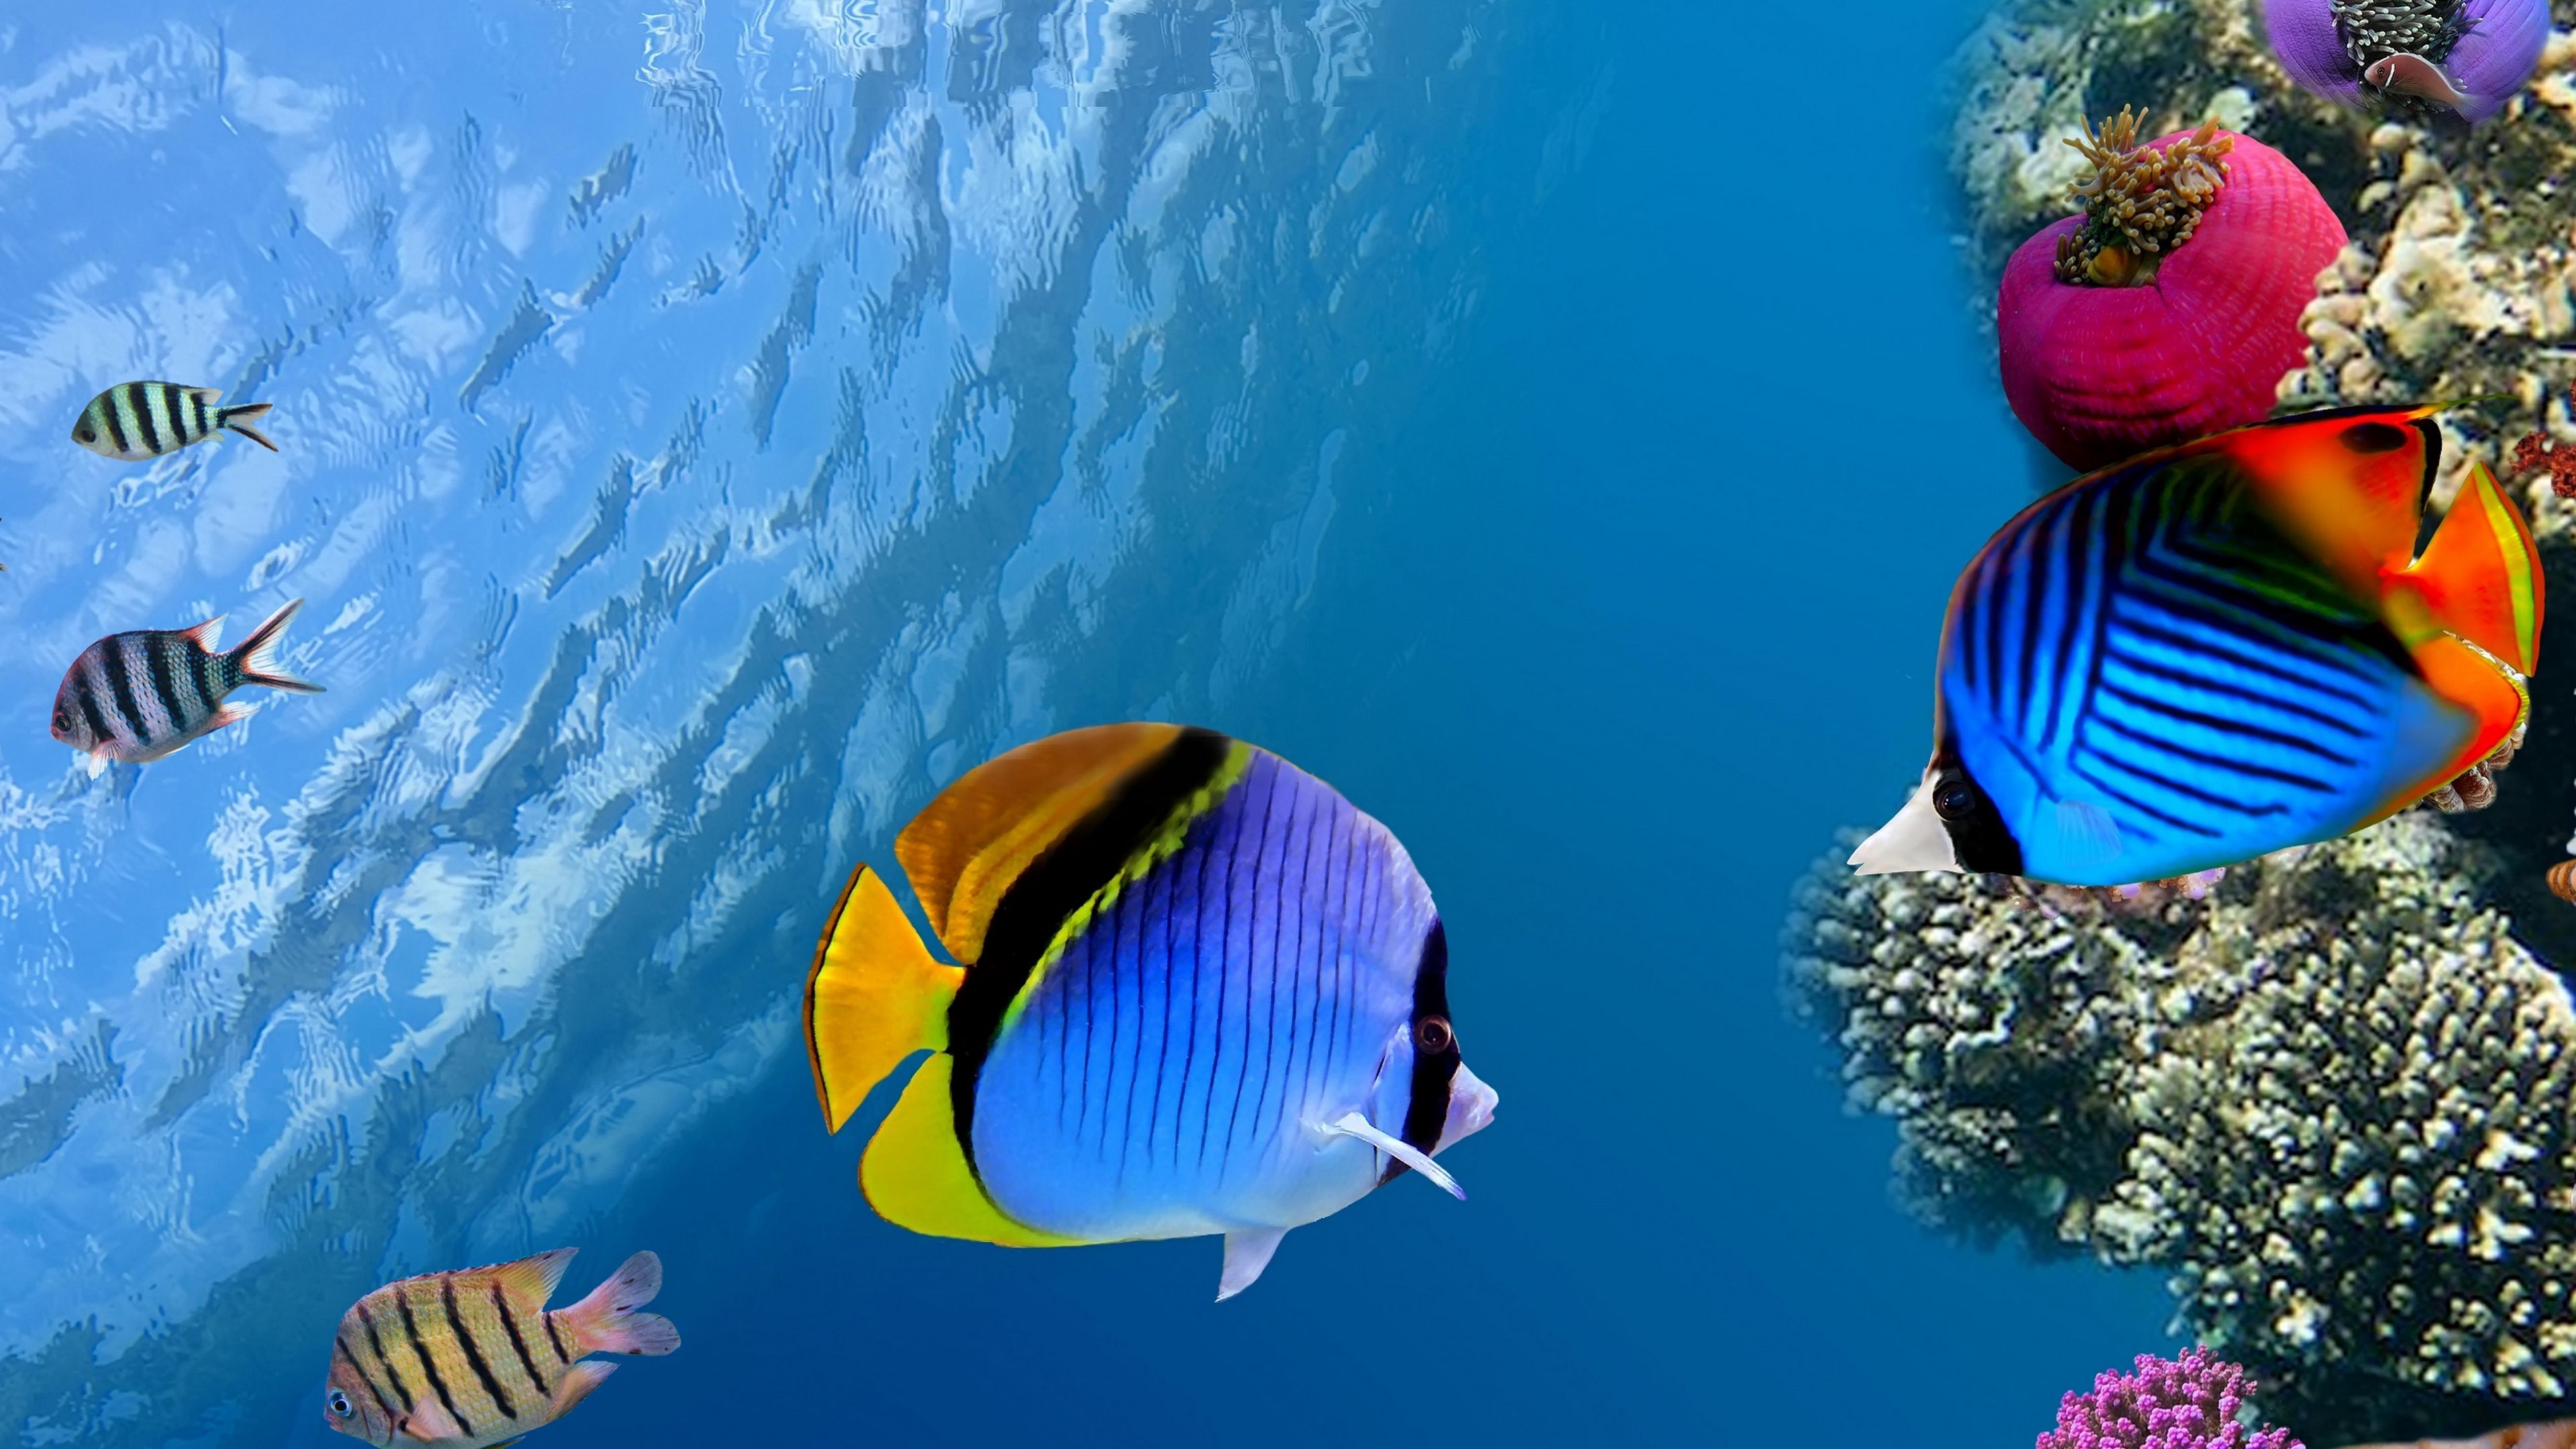 Under water: Lắng nghe tiếng sóng vỗ, nhìn những đợt sóng xô lên và ngắm những sinh vật đầy màu sắc dưới đáy biển. Đó sẽ là trải nghiệm thú vị và đặc biệt khi xem bức ảnh under water này.